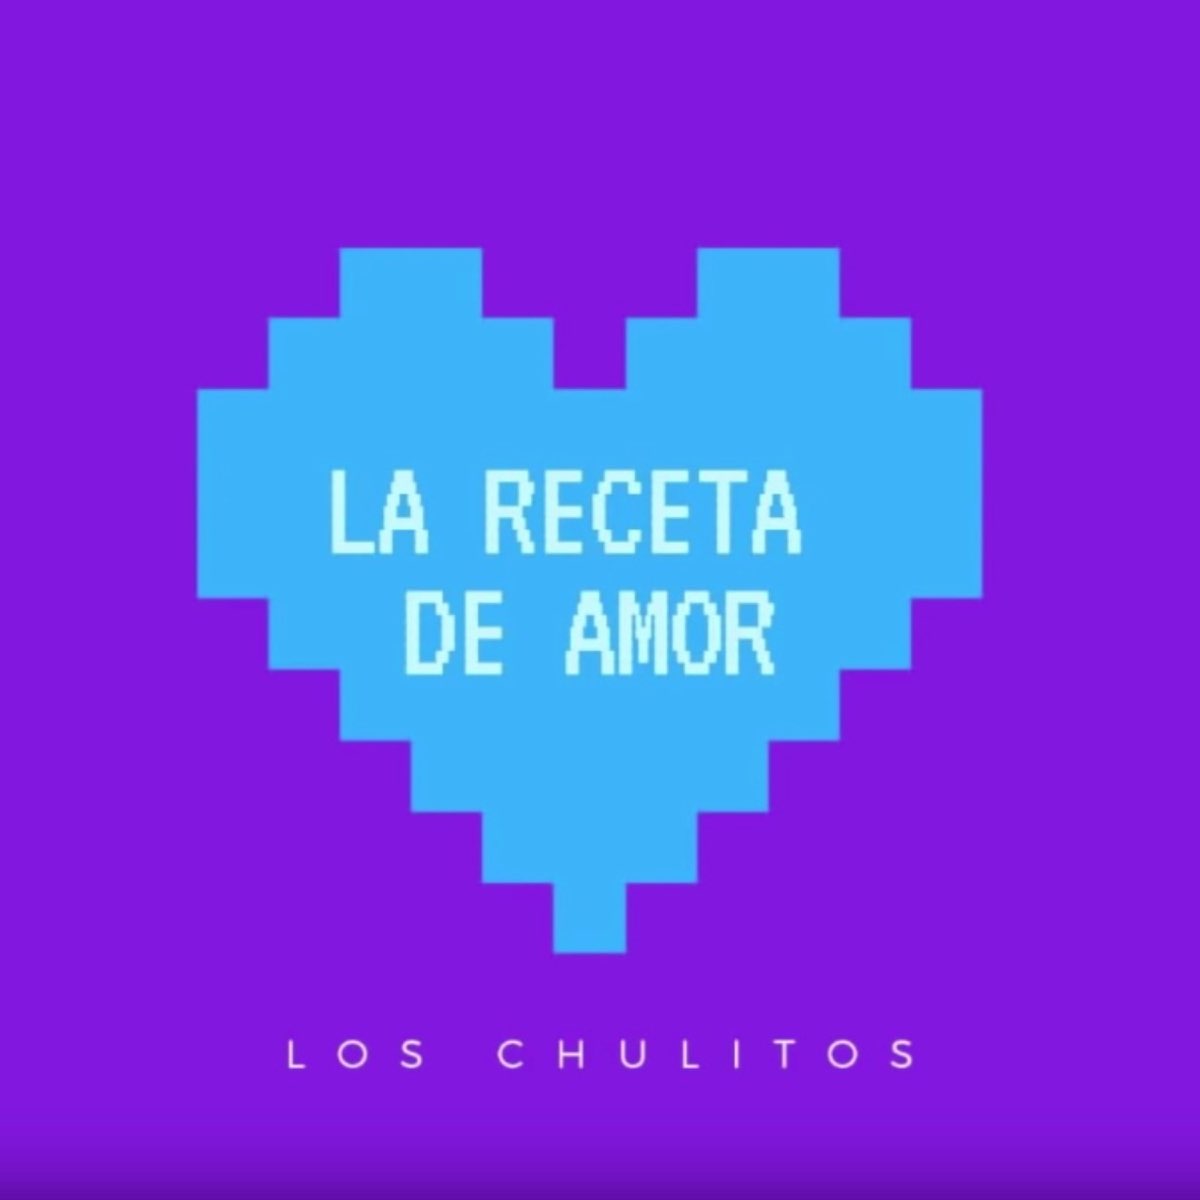 La Receta de Amor - Single by Los Chulitos on Apple Music